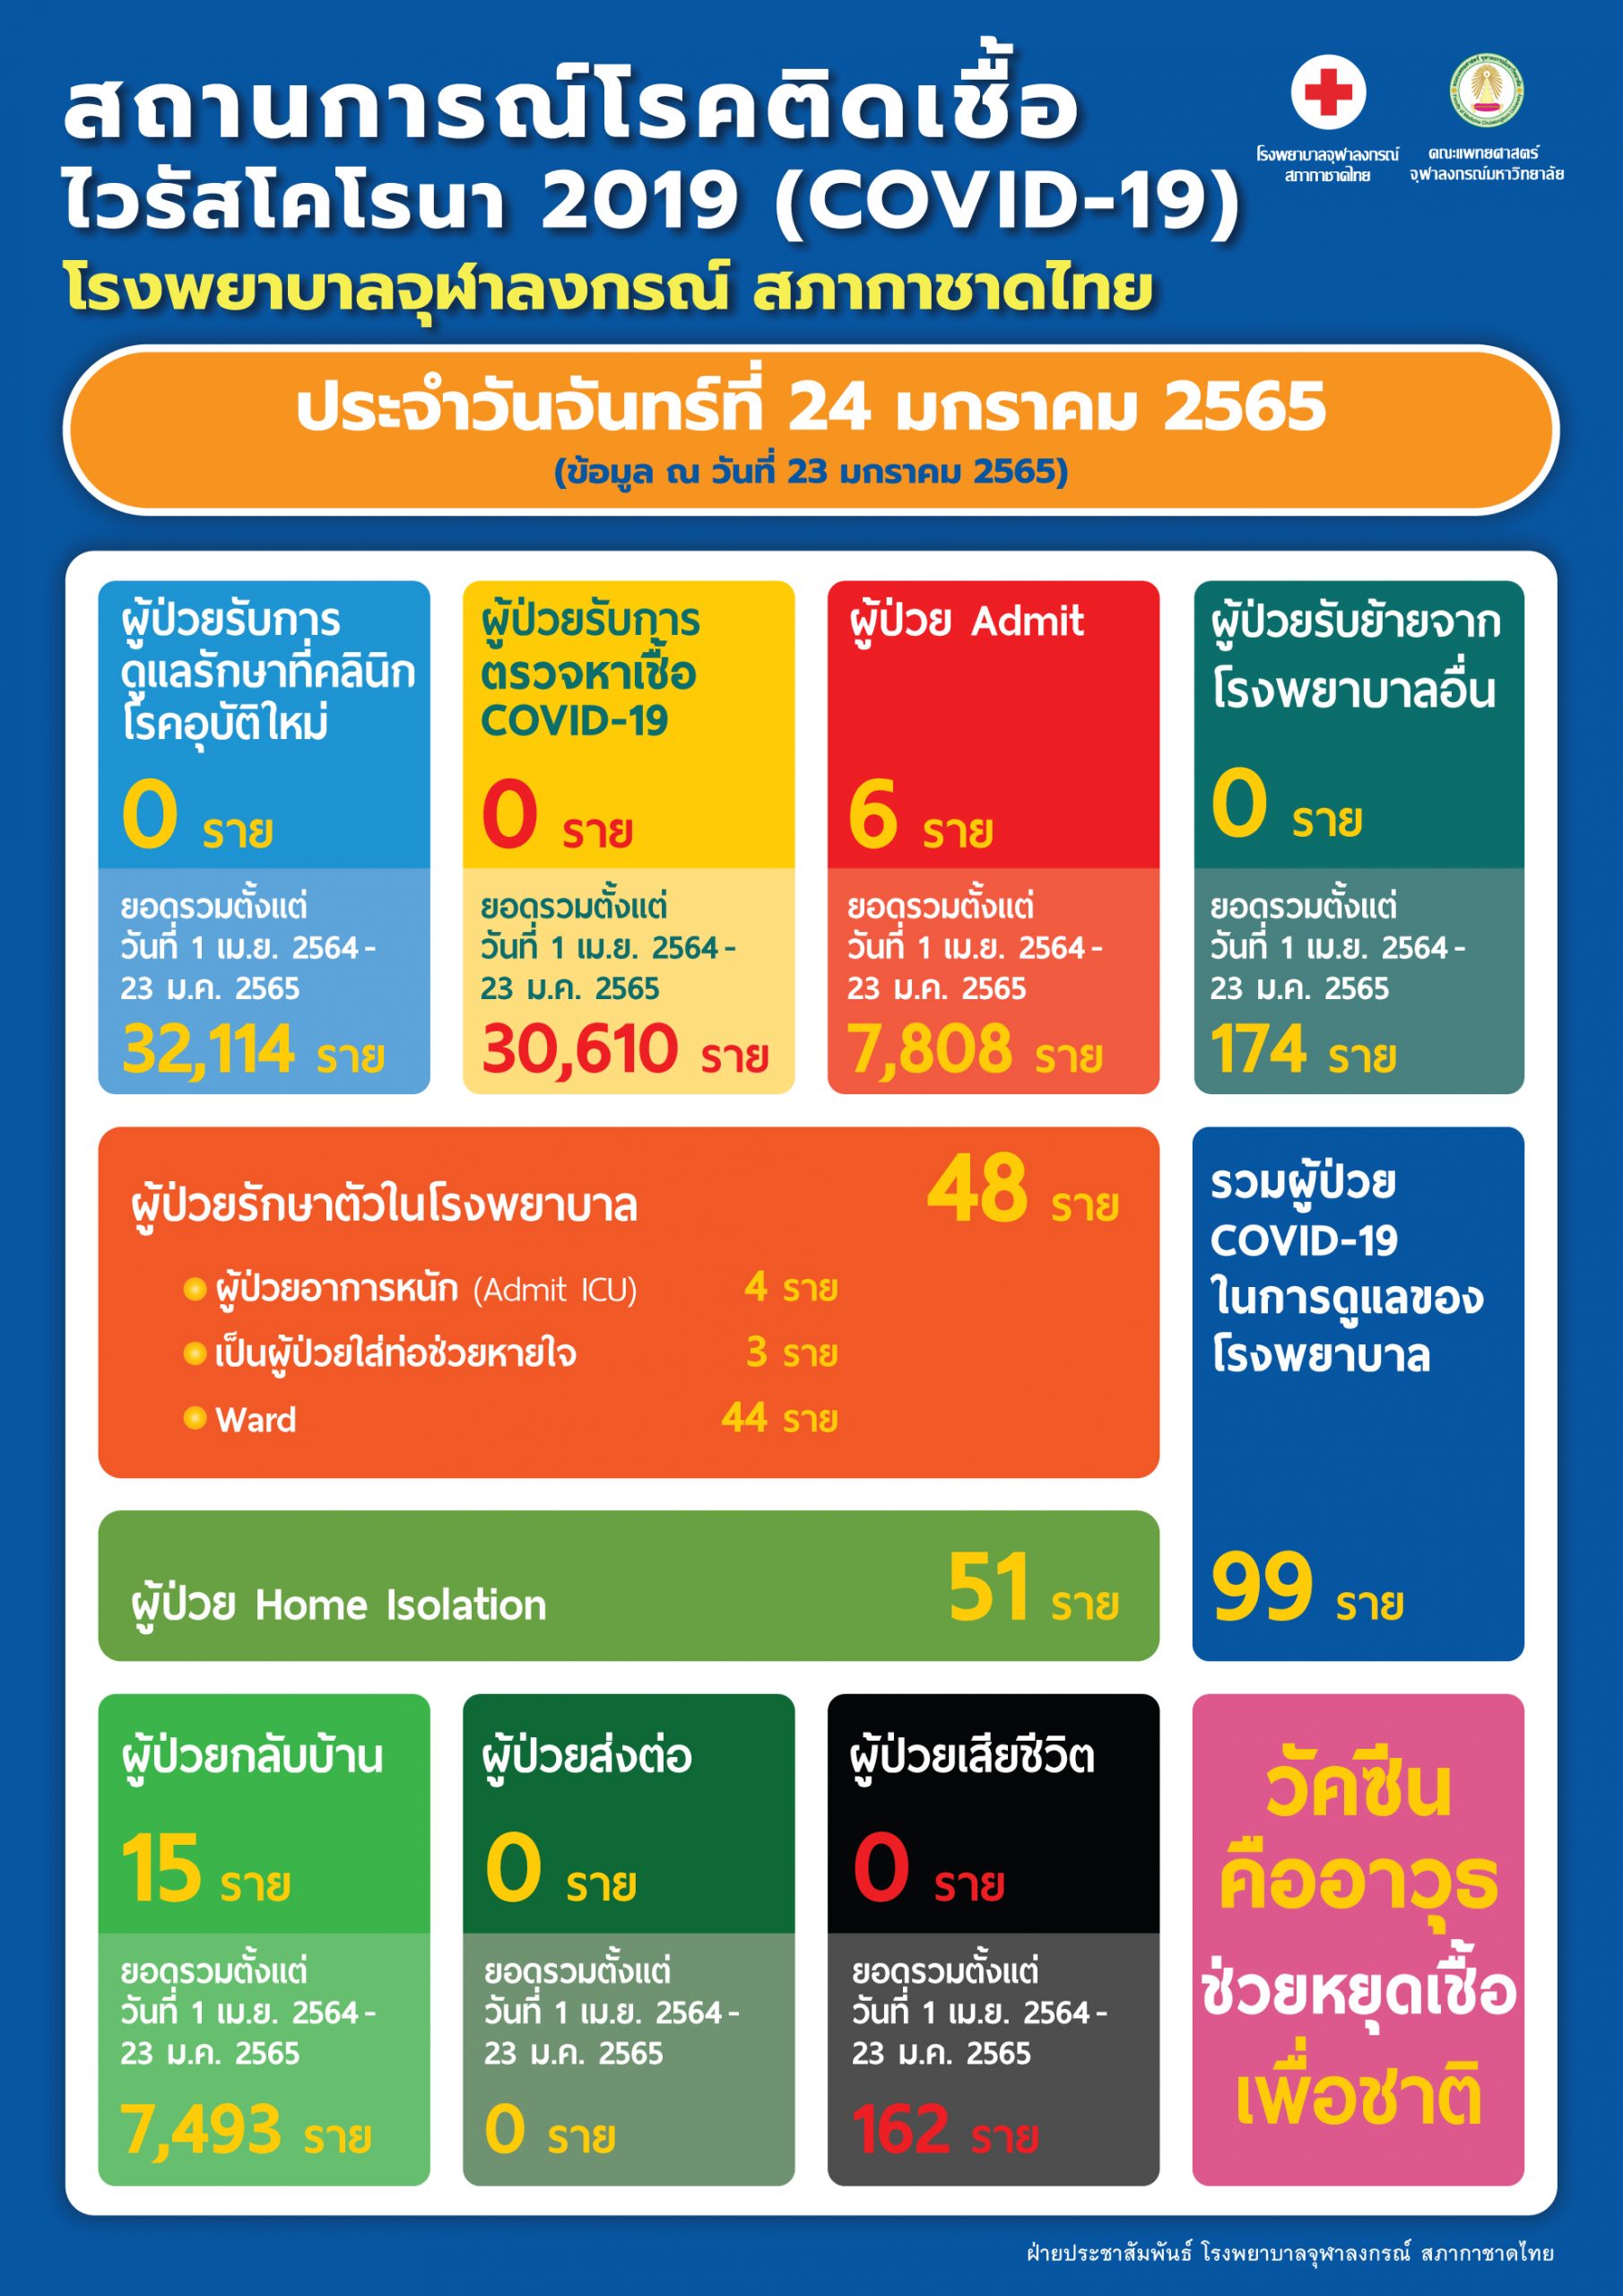 สถานการณ์โรคติดเชื้อไวรัสโคโรนา 2019 (COVID-19) โรงพยาบาลจุฬาลงกรณ์ สภากาชาดไทย ประจำวันจันทร์ที่ 24 มกราคม 2565